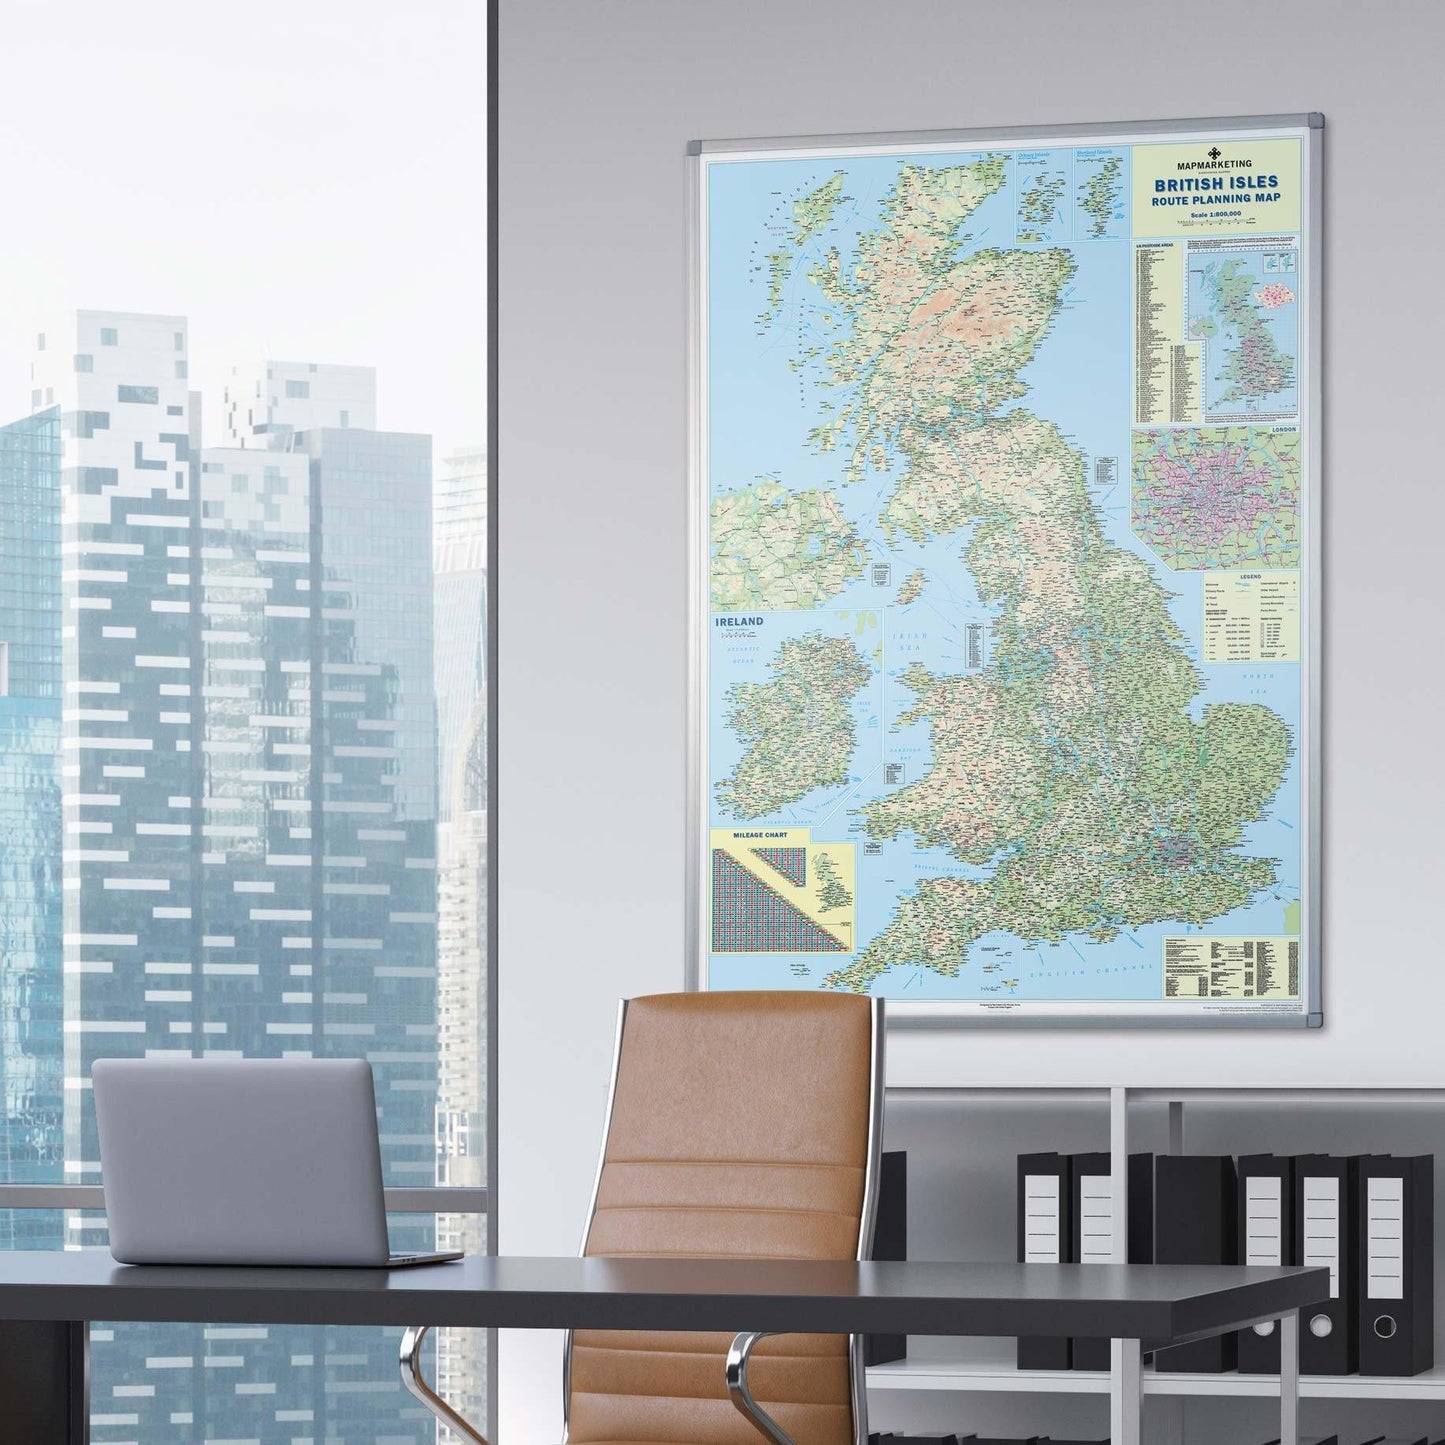 British Isles Motoring Map - Road Wall Map of UK and Ireland